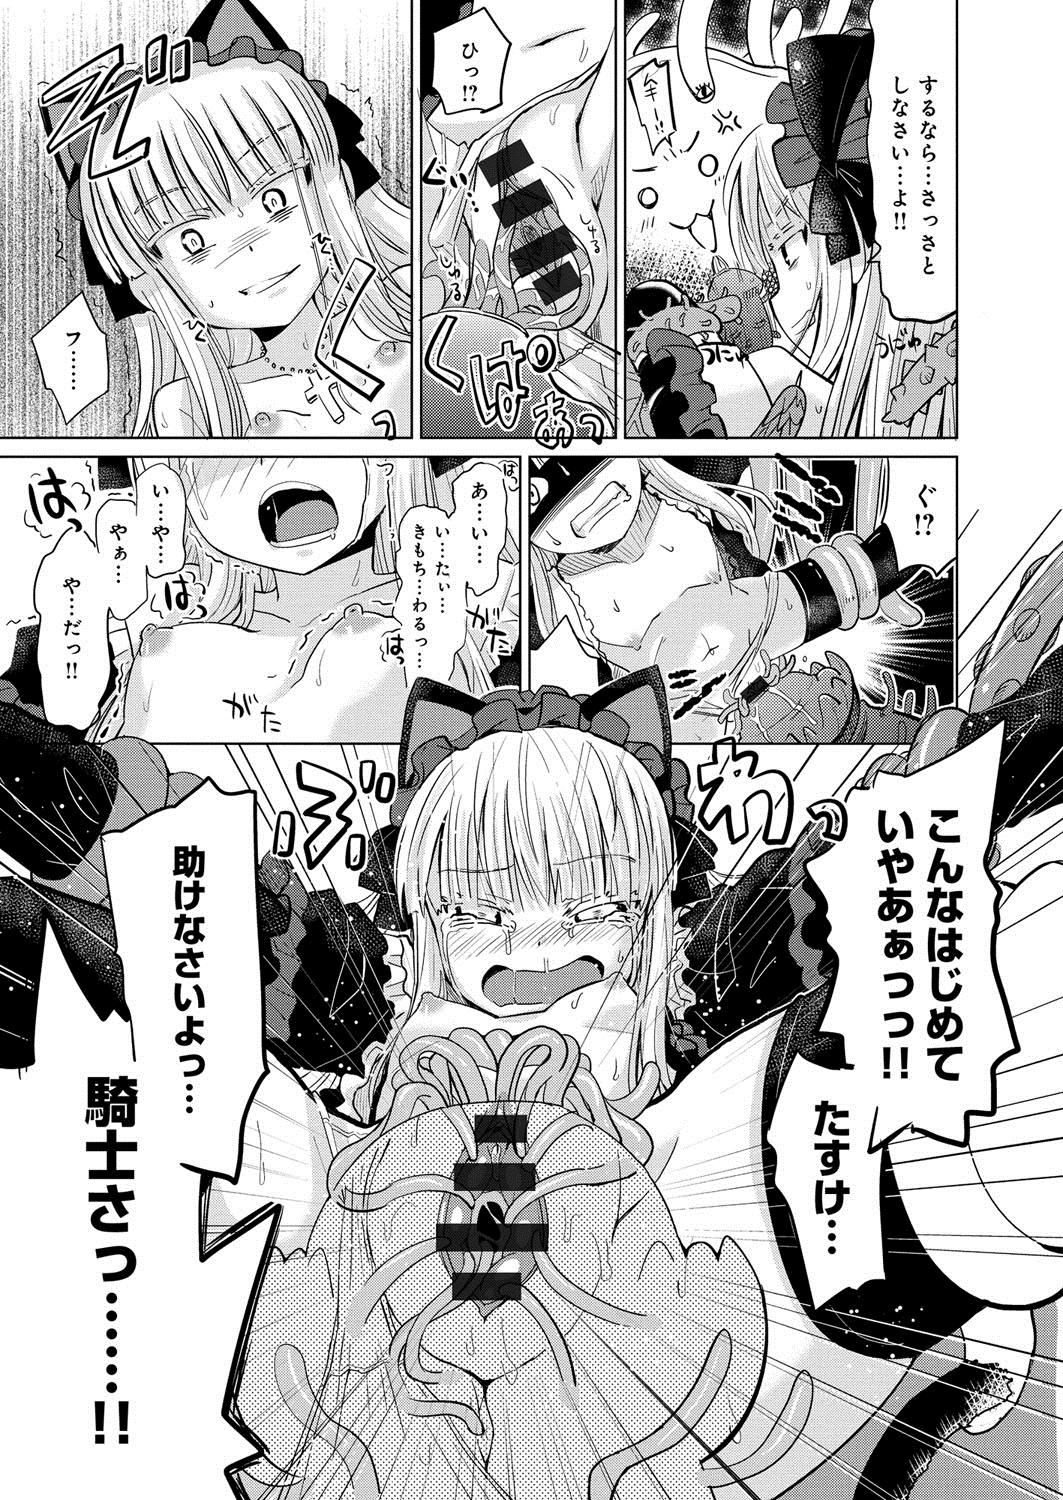 [Anthology] Lord of Valkyrie Adult - Comic Anthology R18 Handakara Saigomade... Mou, Kishi-sama no Ecchi♪ 71